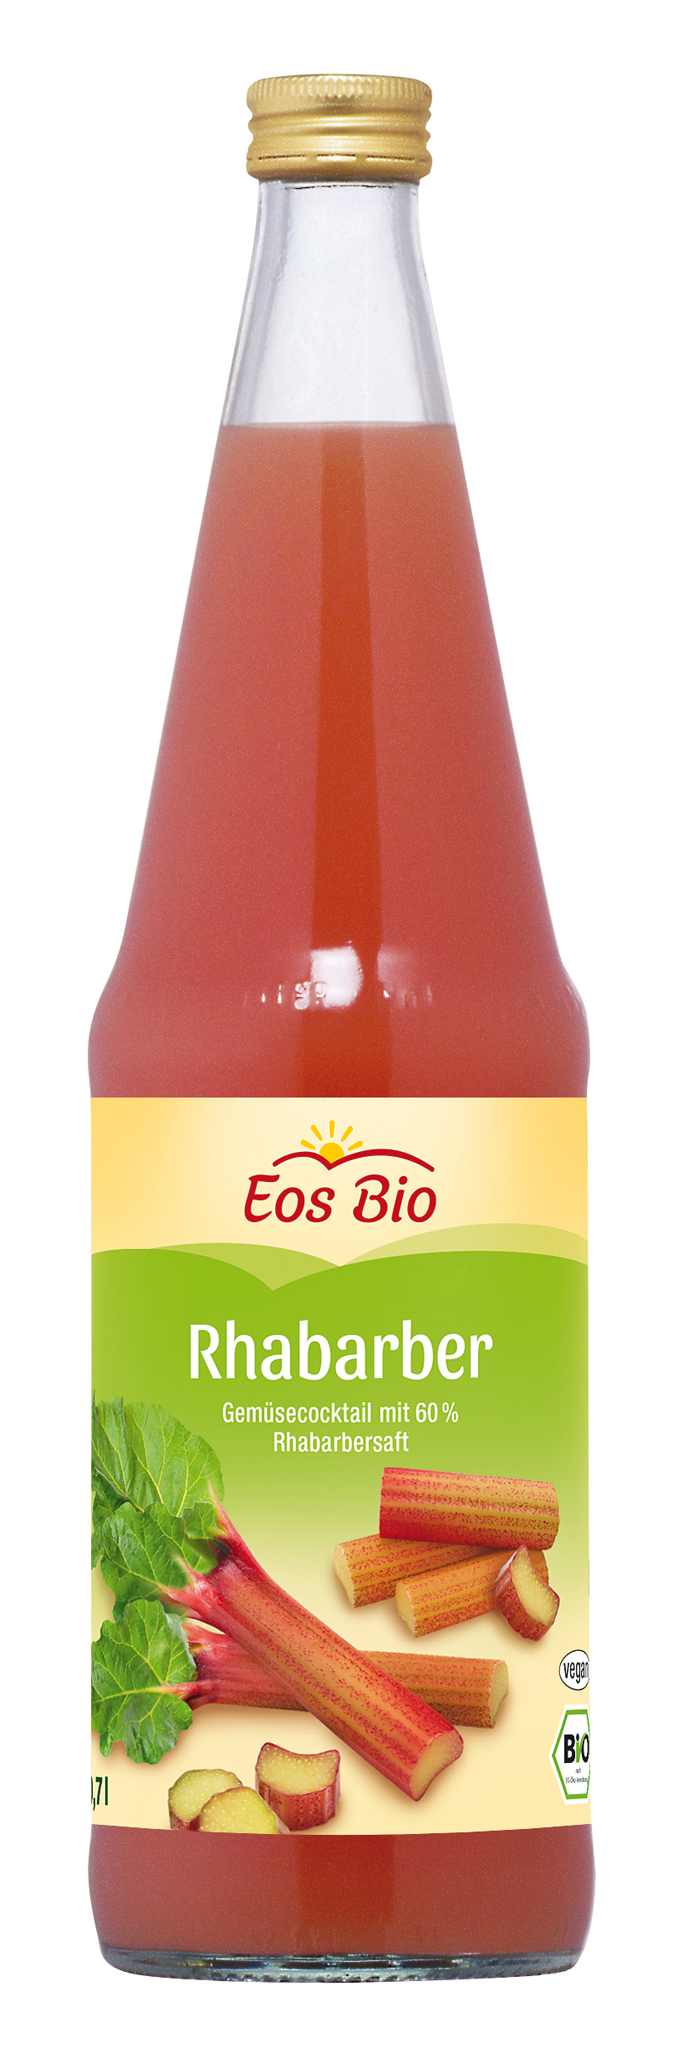 Eos Bio Rhabarber